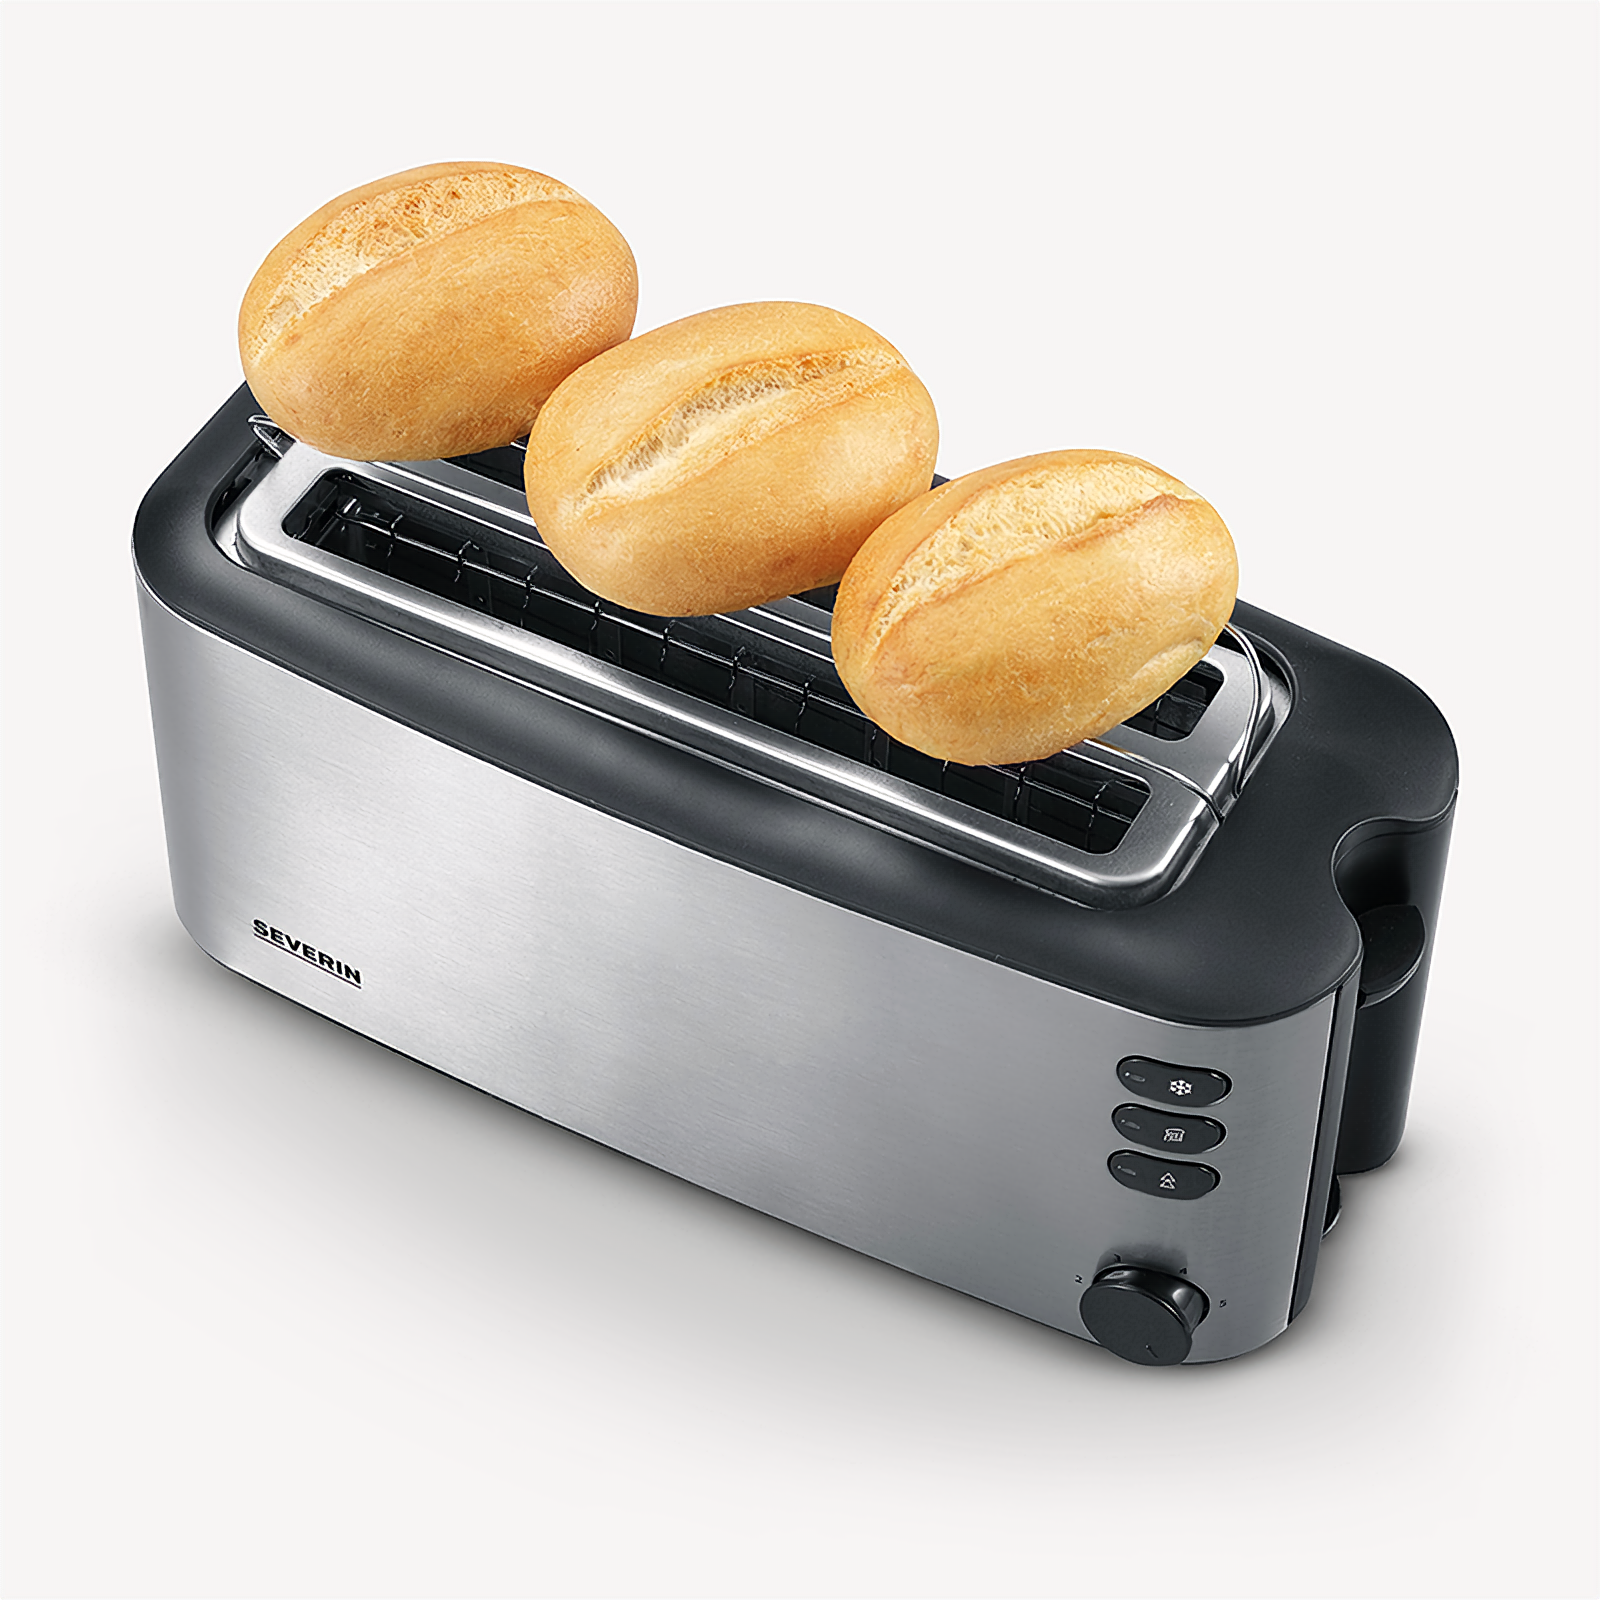 Watt, (1400 Edelstahl 2,0) Toaster 2509 SEVERIN AT Schlitze: